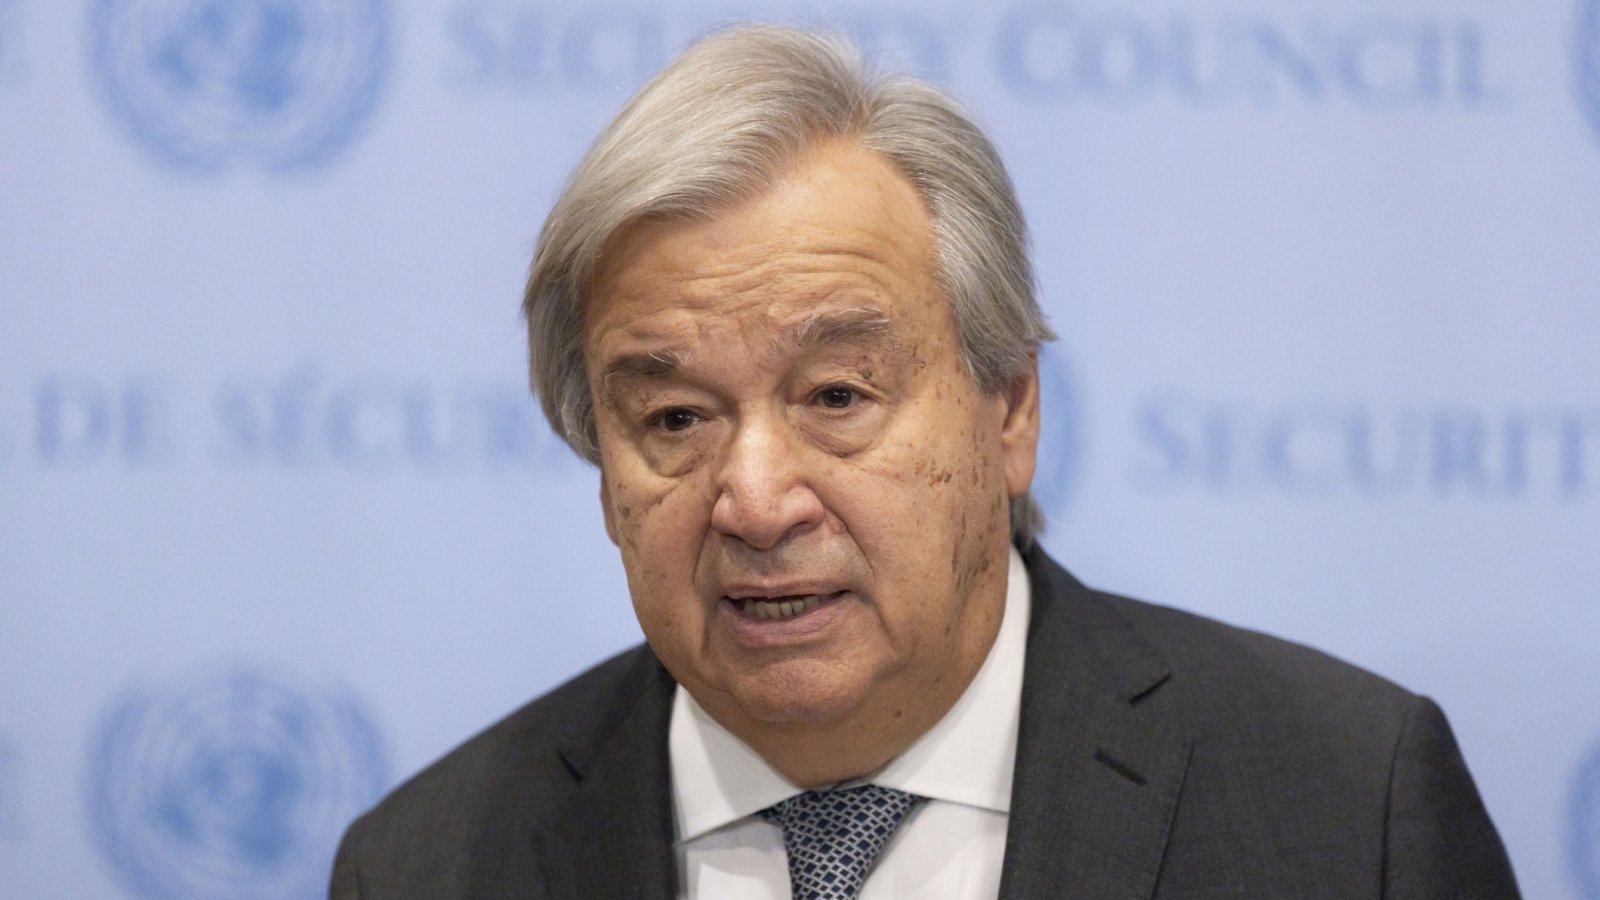 Jefe de la ONU afirma que sus declaraciones sobre Hamás fueron "mal interpretadas"